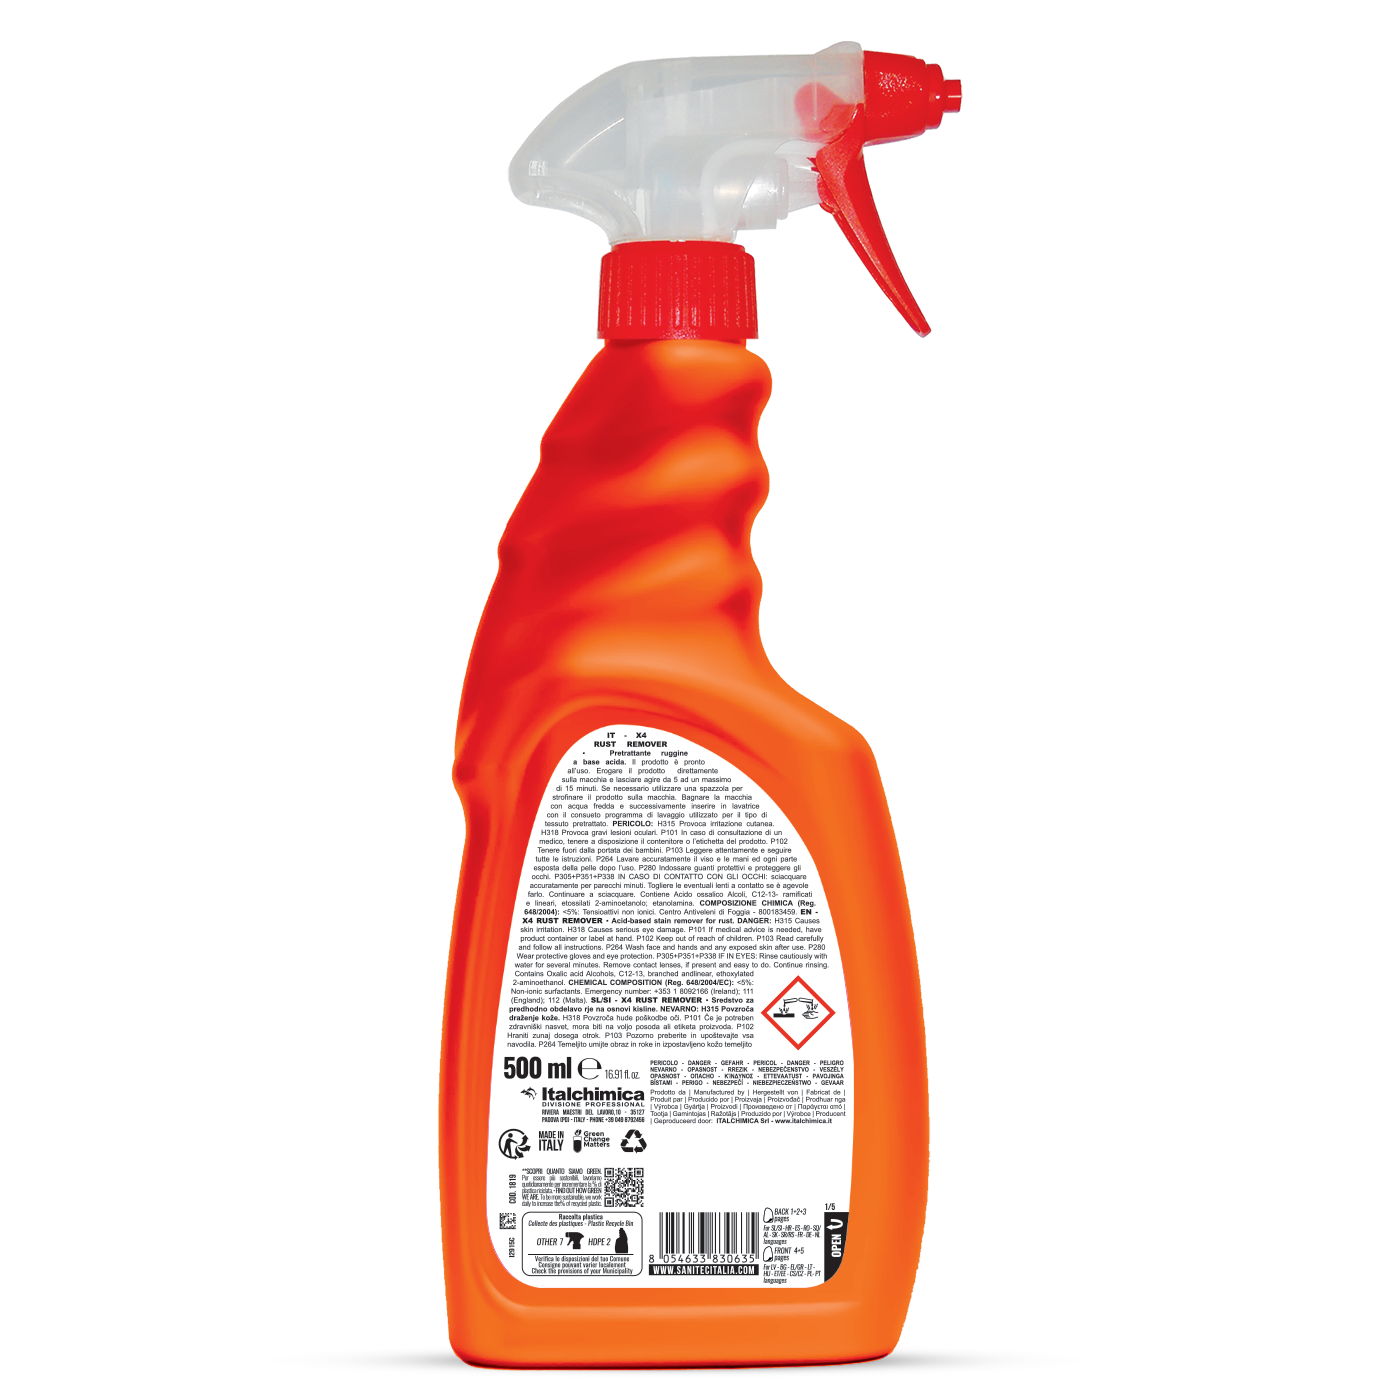 Savalapú folteltávolító előkezelő spray rozsdafoltok ellen 500 ml - Sanitec X4 Rust Remover 1819